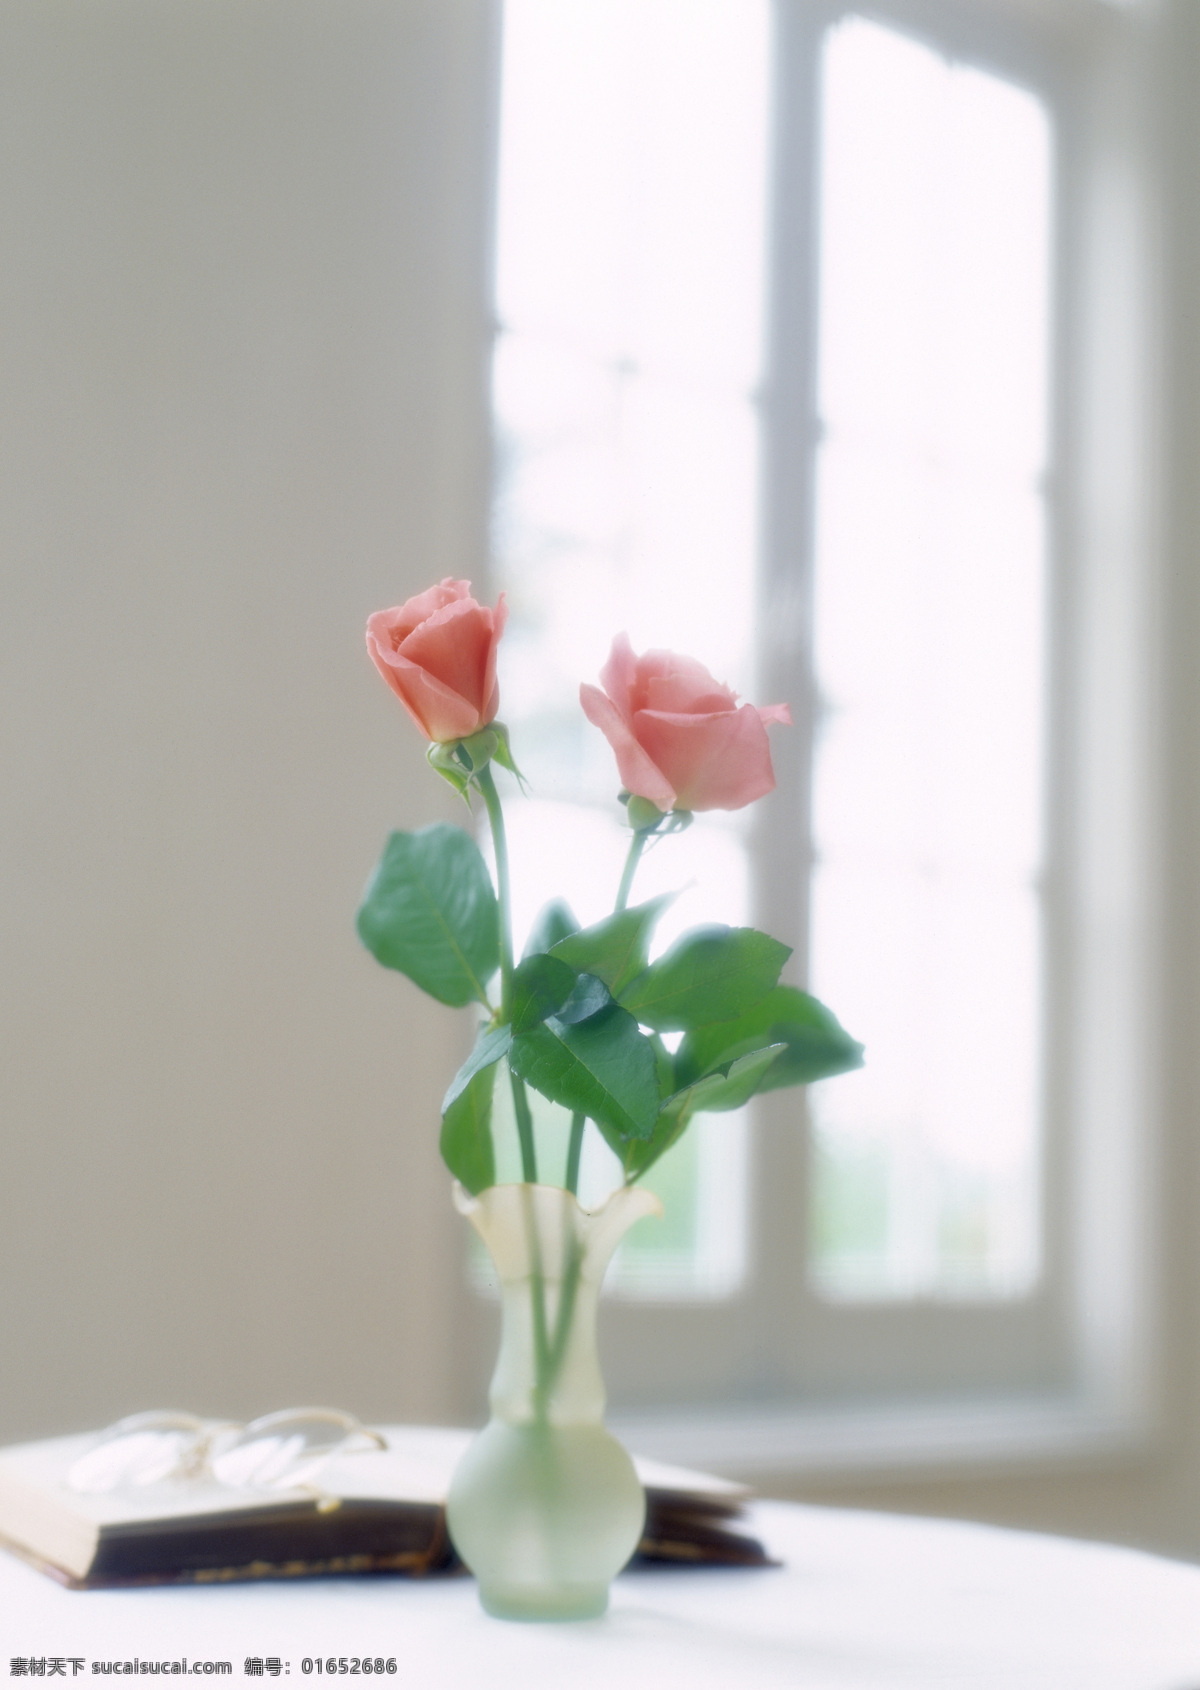 桌子上的花瓶 室内摄影 静物摄影 摄影素材 淡雅 生活百科 静物 家居生活 家居 植物 花瓶 室内设计 环境家居 白色